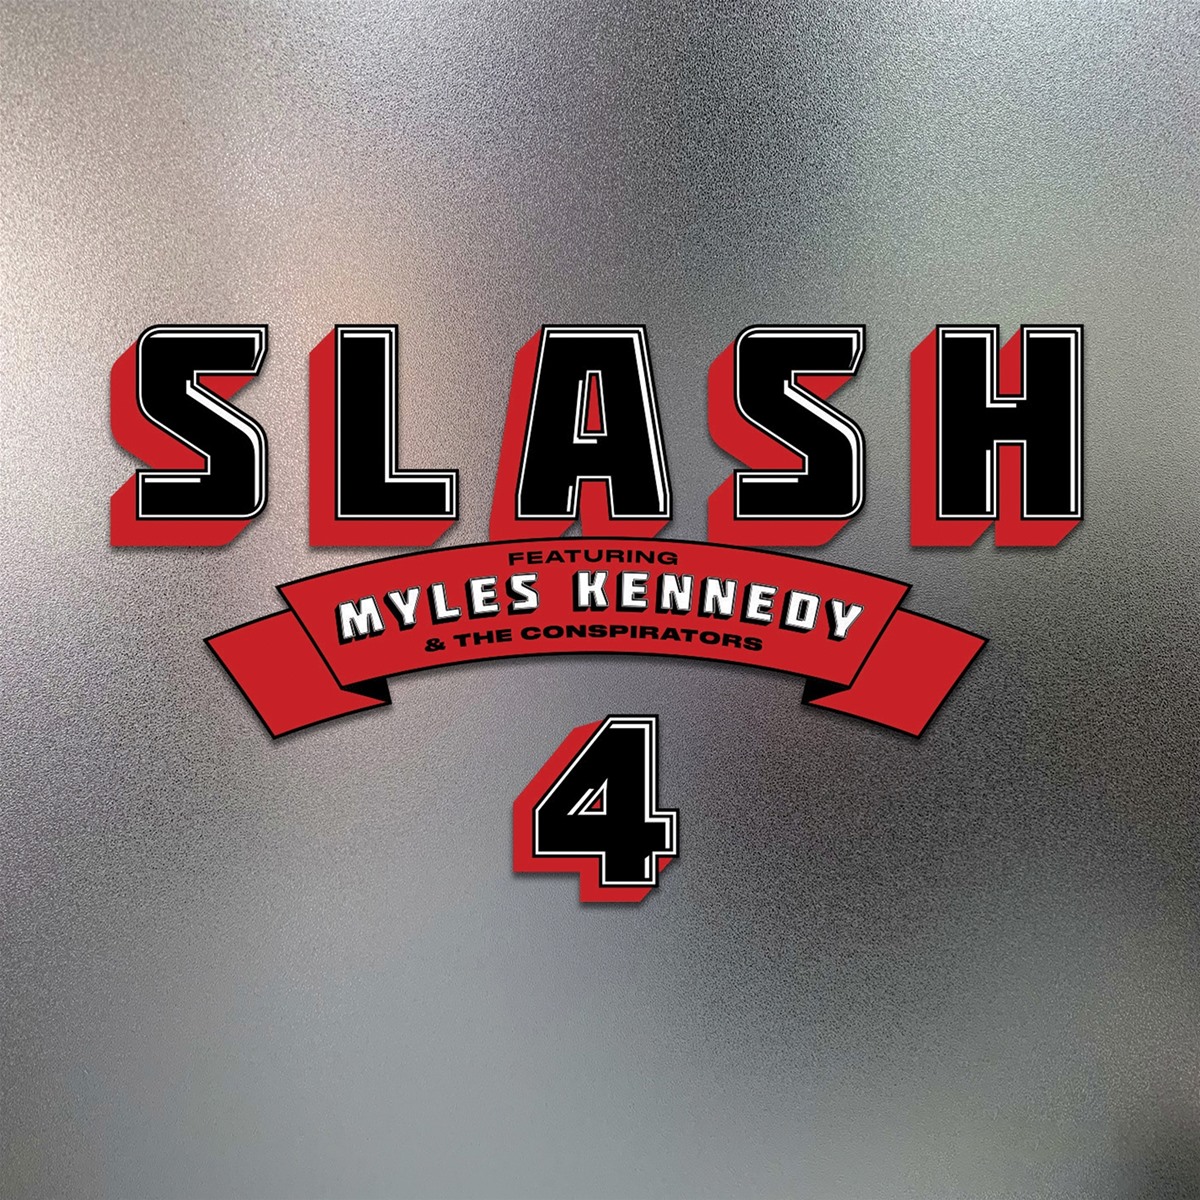 Das Albumcover "4" von Slash featuring Myles Kennedy & The Conspirators ist grau und körnig. In der Mitte stehen die Album- und Interpretnamen.